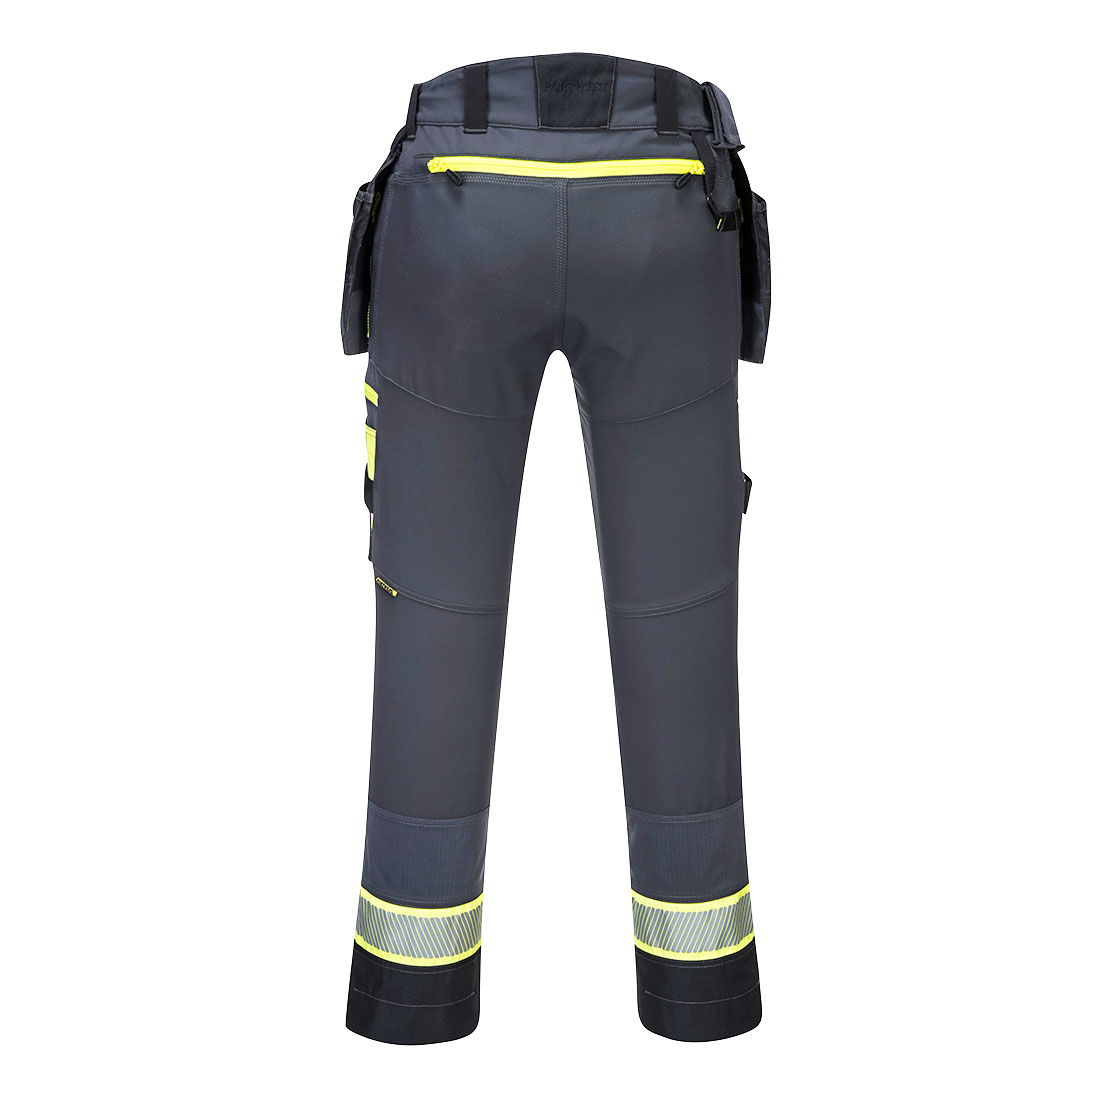 DX440 - Spodnie z kieszeniami kaburowymi DX4 - nakolanniki gratis - 3 kolory - 26-48